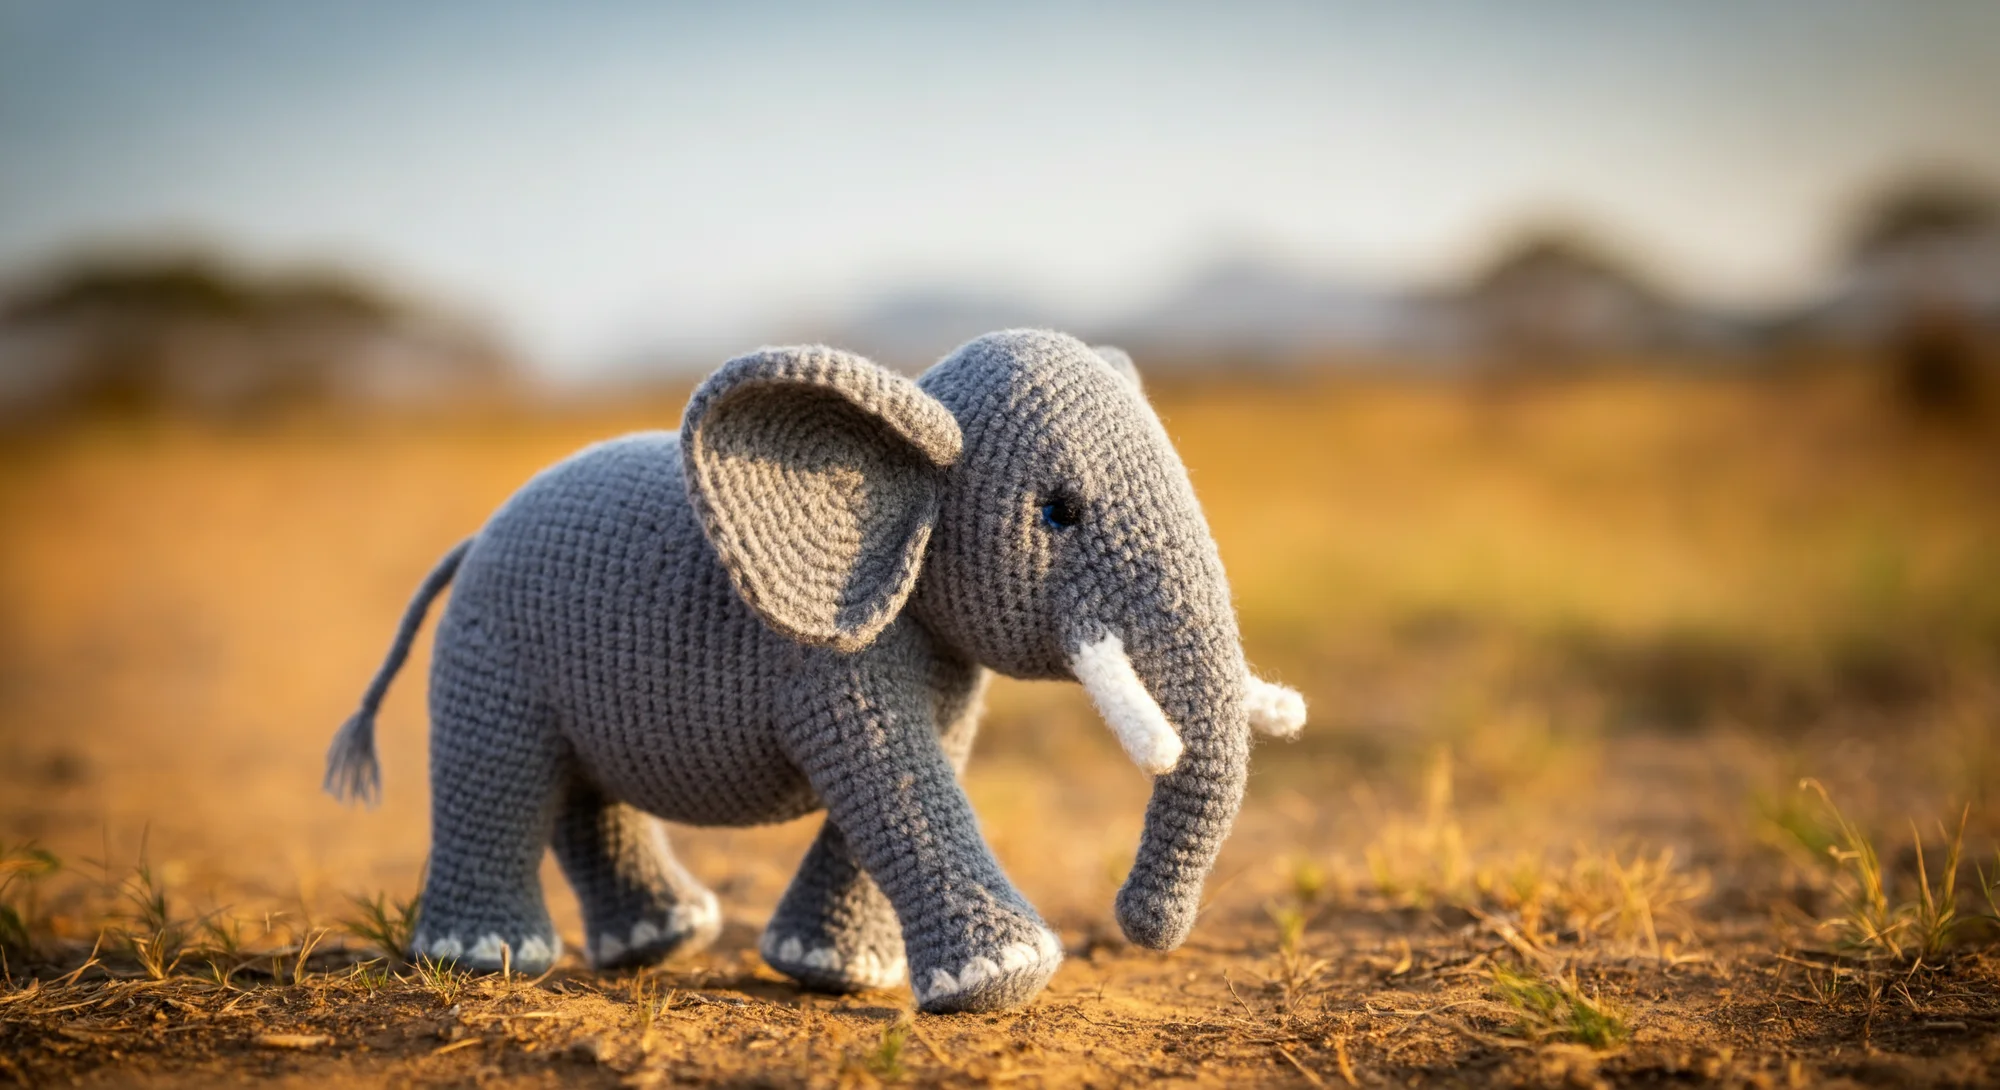 一个灰色的钩编大象玩具站在草地上的土路上。大象有白色的獠牙和指甲以及黑色的眼睛。背景是模糊的绿色和棕色的植物，远处夕阳西下。